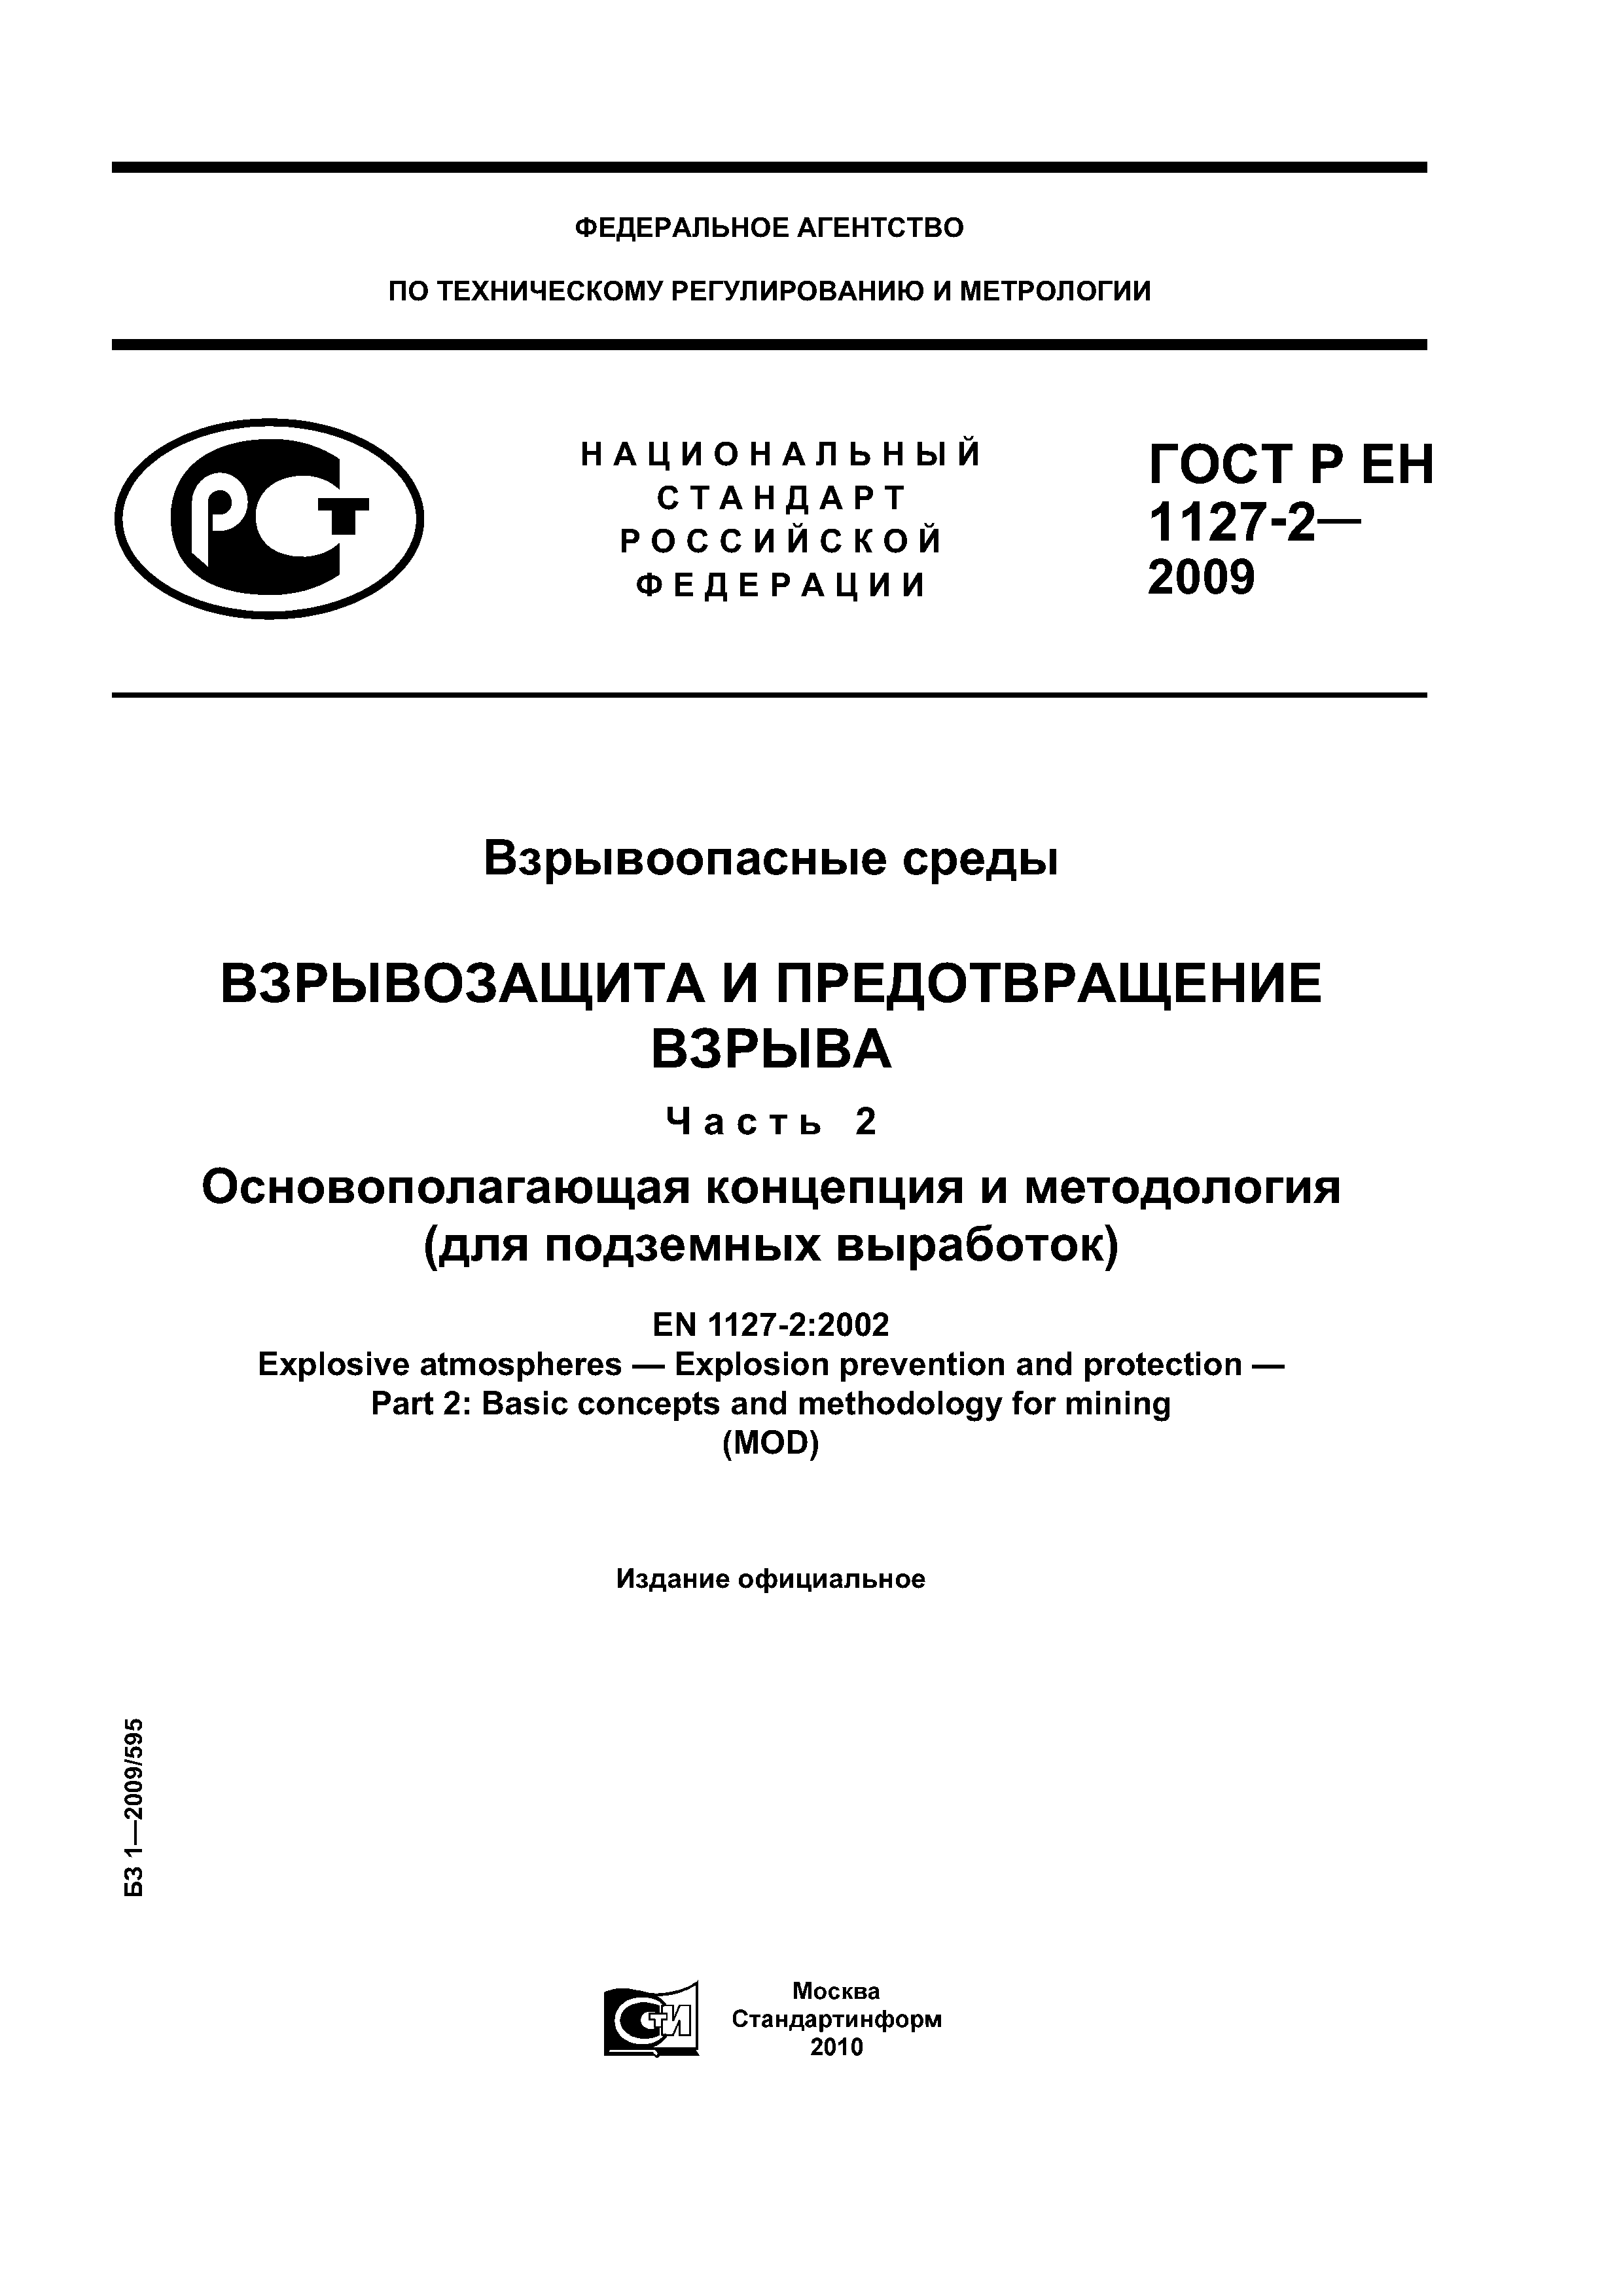 ГОСТ Р ЕН 1127-2-2009